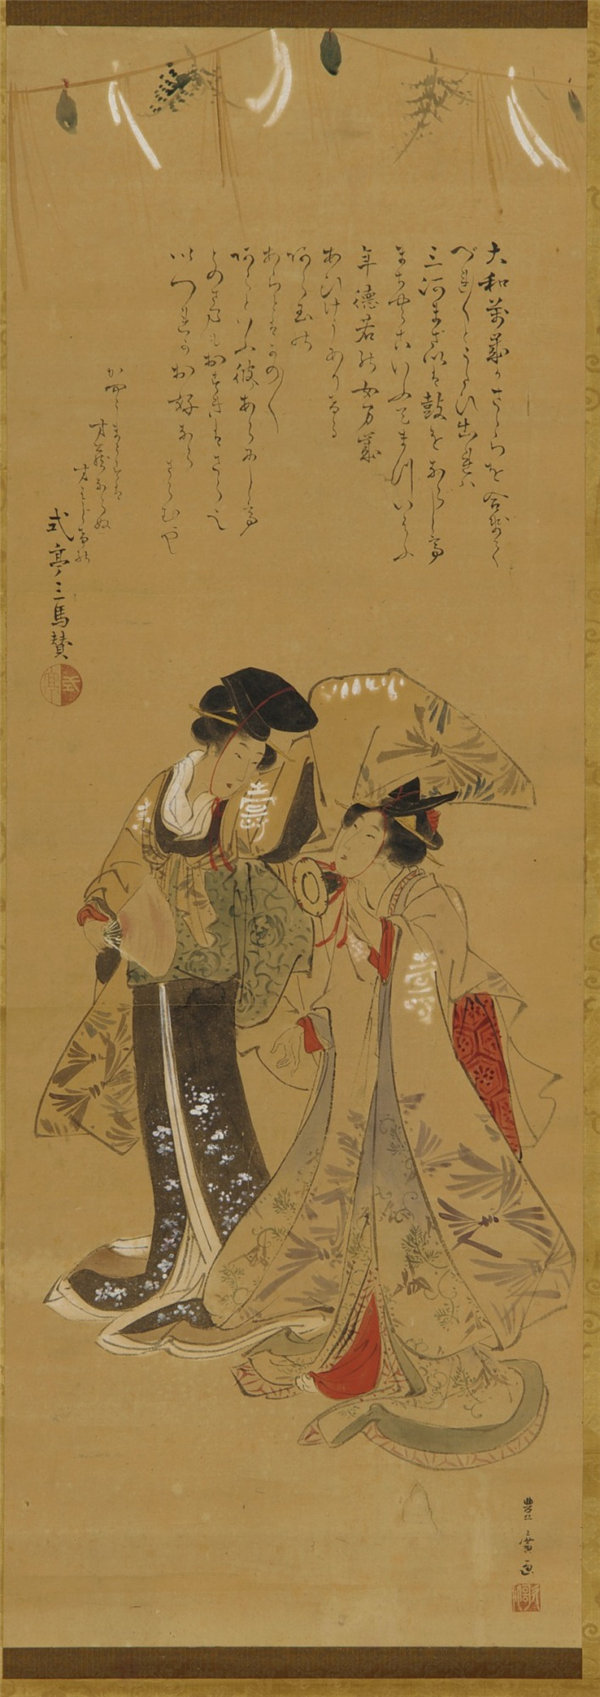 歌川豊広 (1773-1828)-两个女孩打扮成万岁表演者 绘画作品